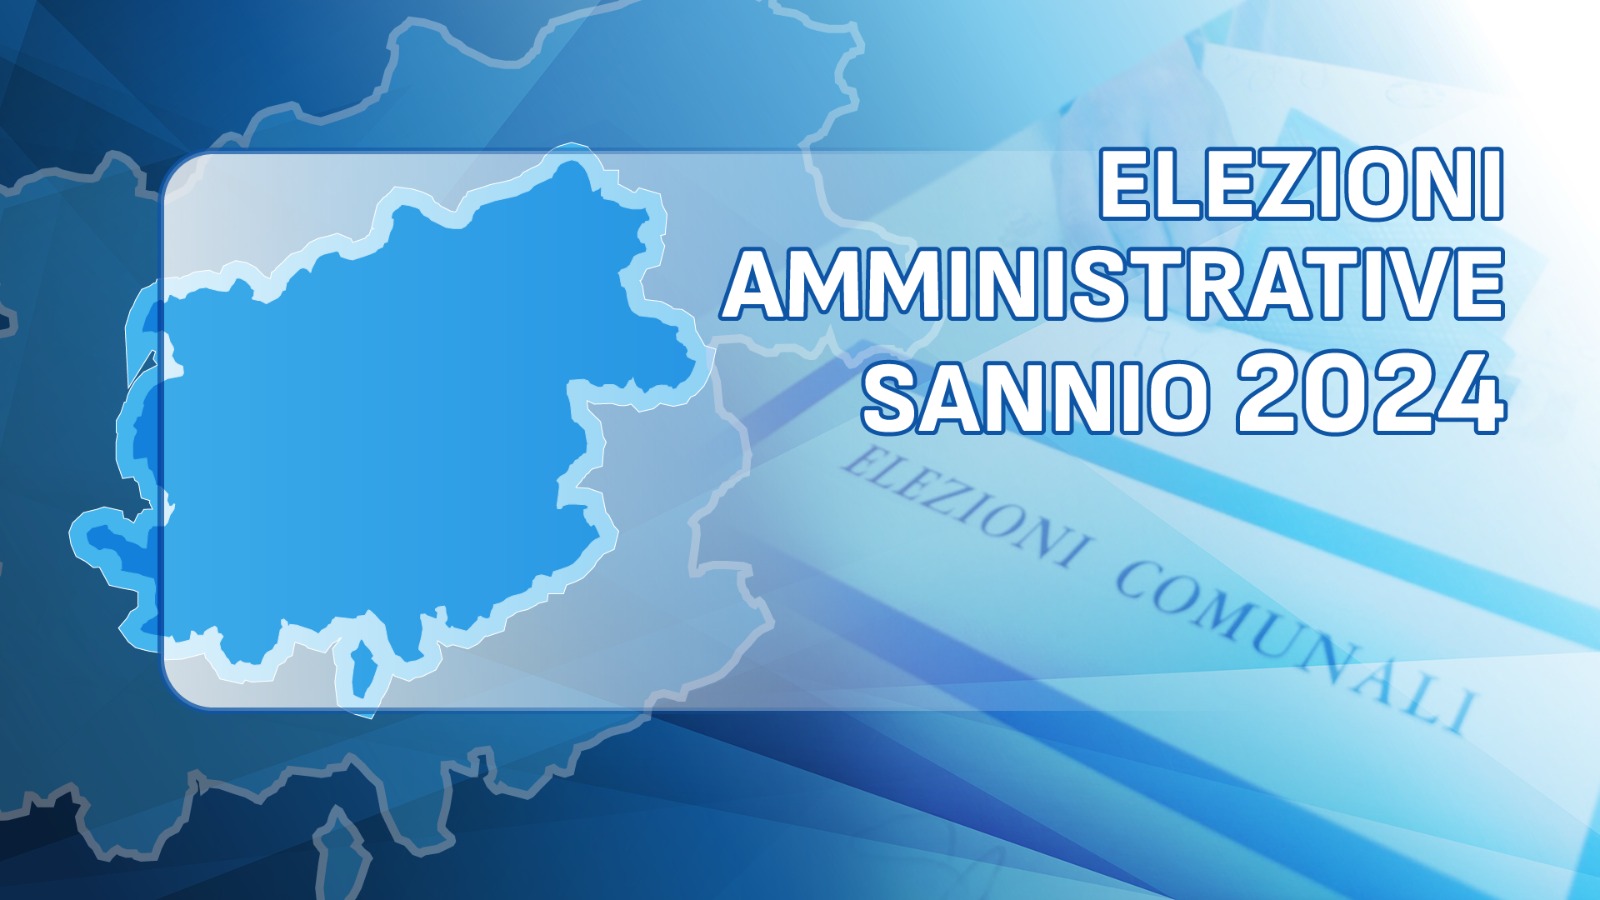 Amministrative 2024, in provincia di Benevento molte riconferme. Ricci nuovo sindaco di San Giorgio del Sannio